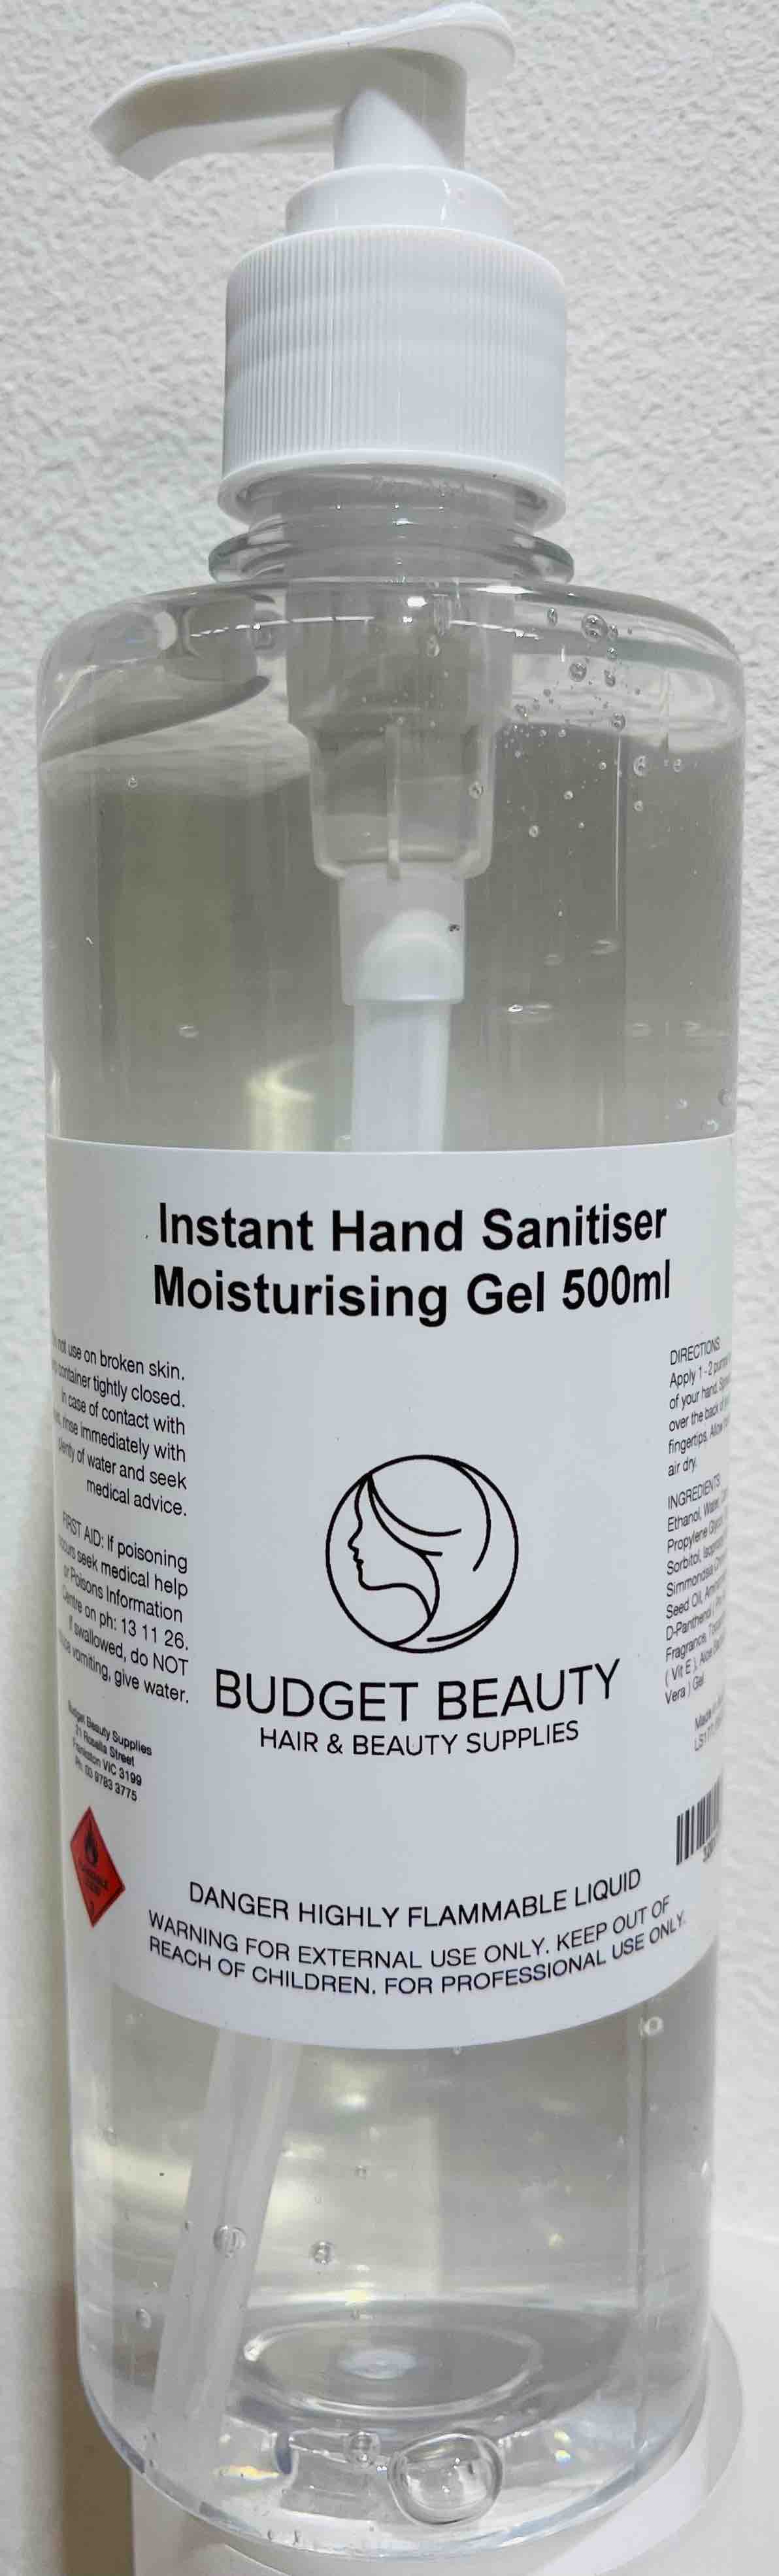 BBS Instant Hand Sanitiser Moisturising Gel 500ml